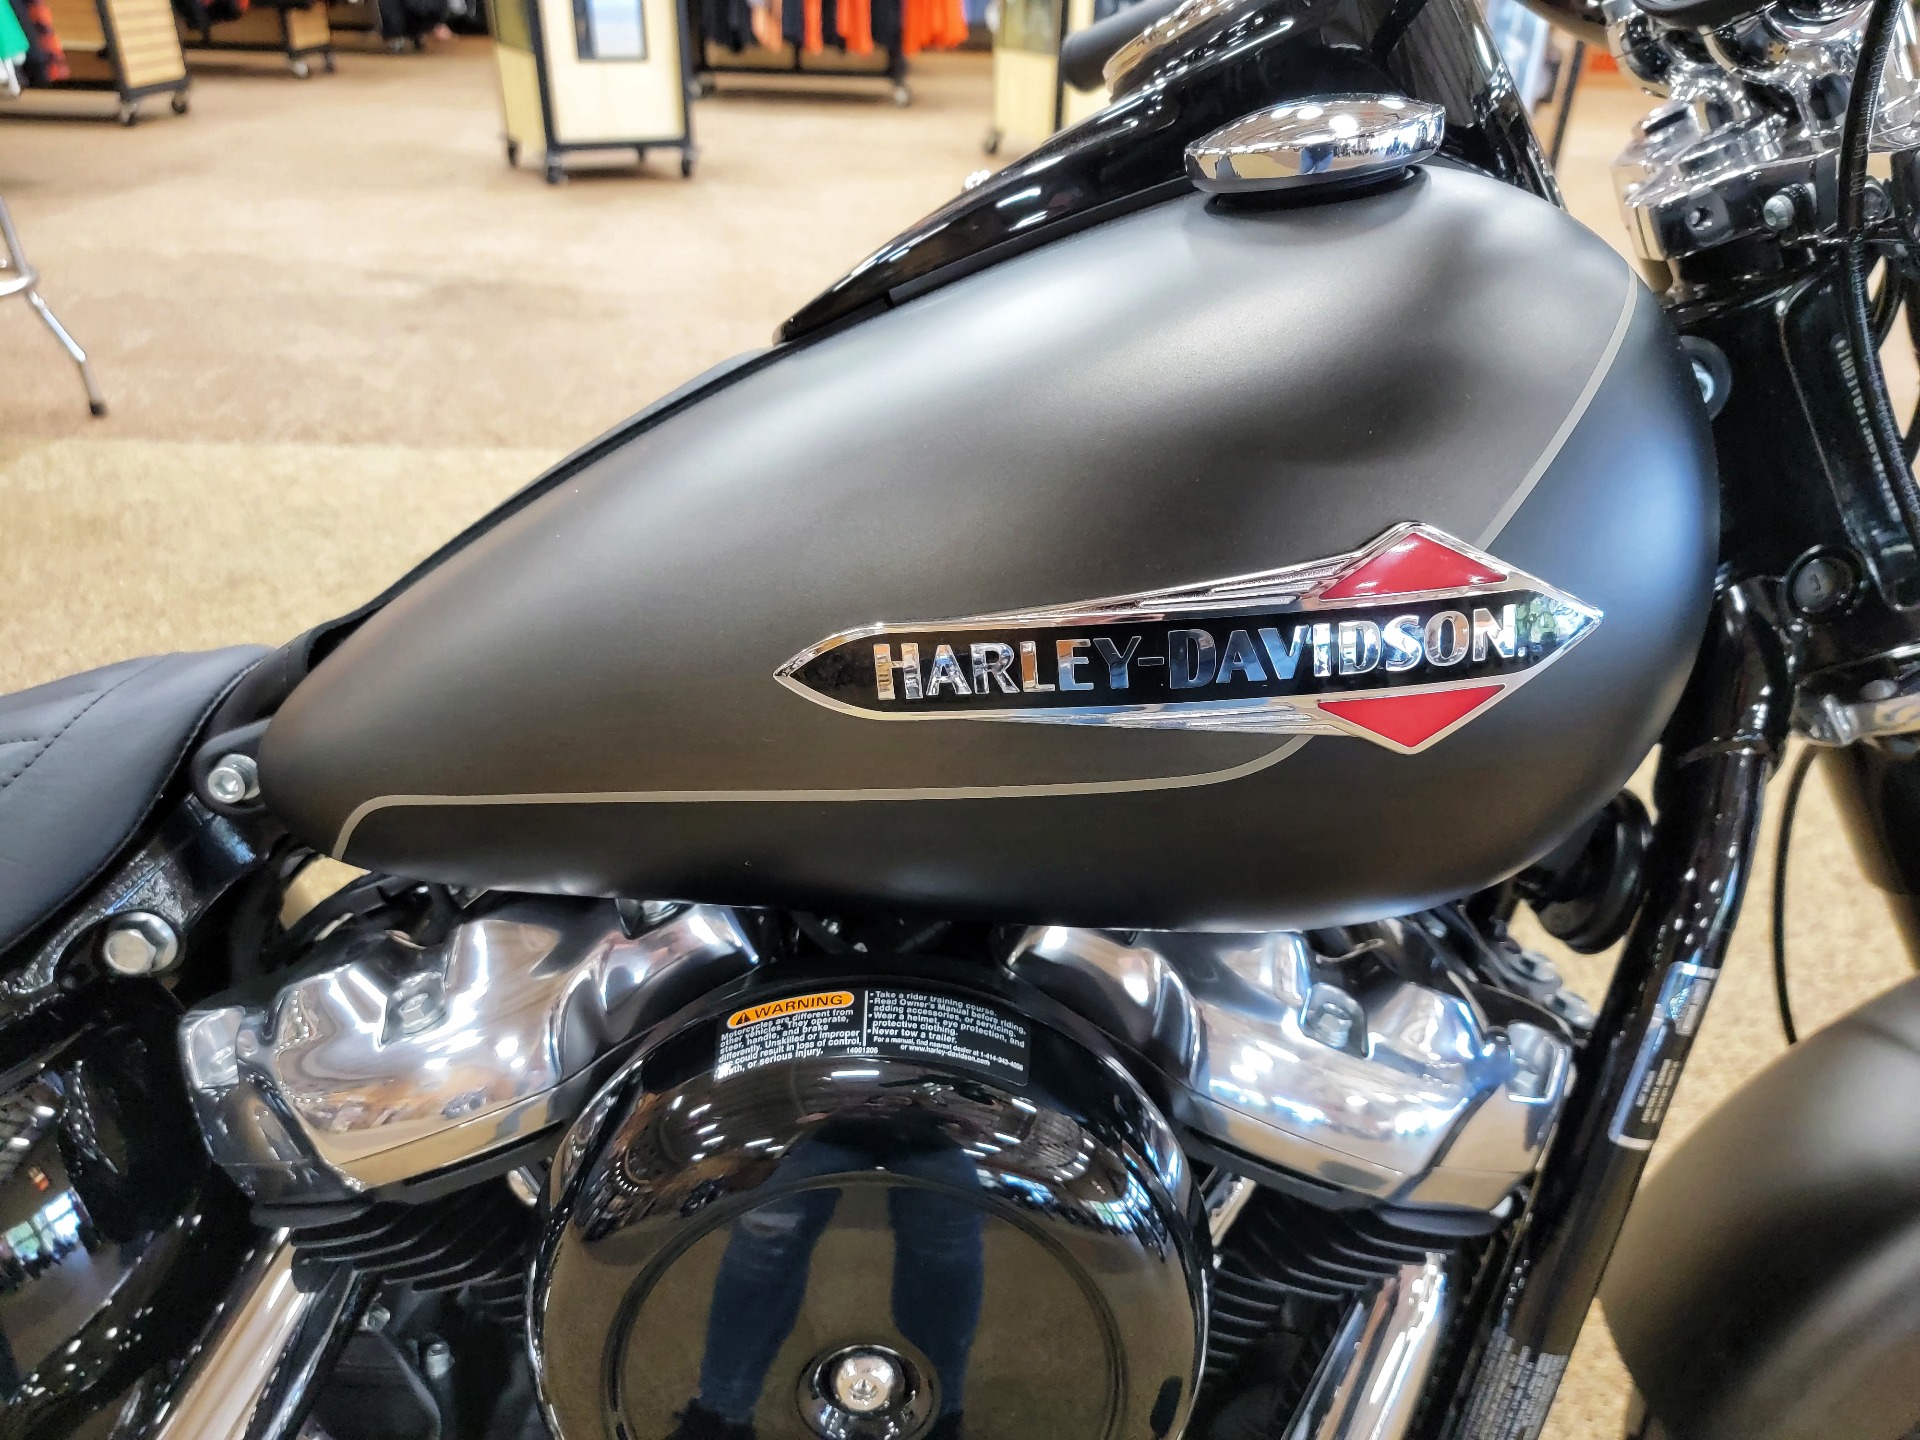 New 2021 Harley Davidson Softail Slim River Rock Gray Denim Black Denim Motorcycles In Sauk Rapids Mn Fl032039